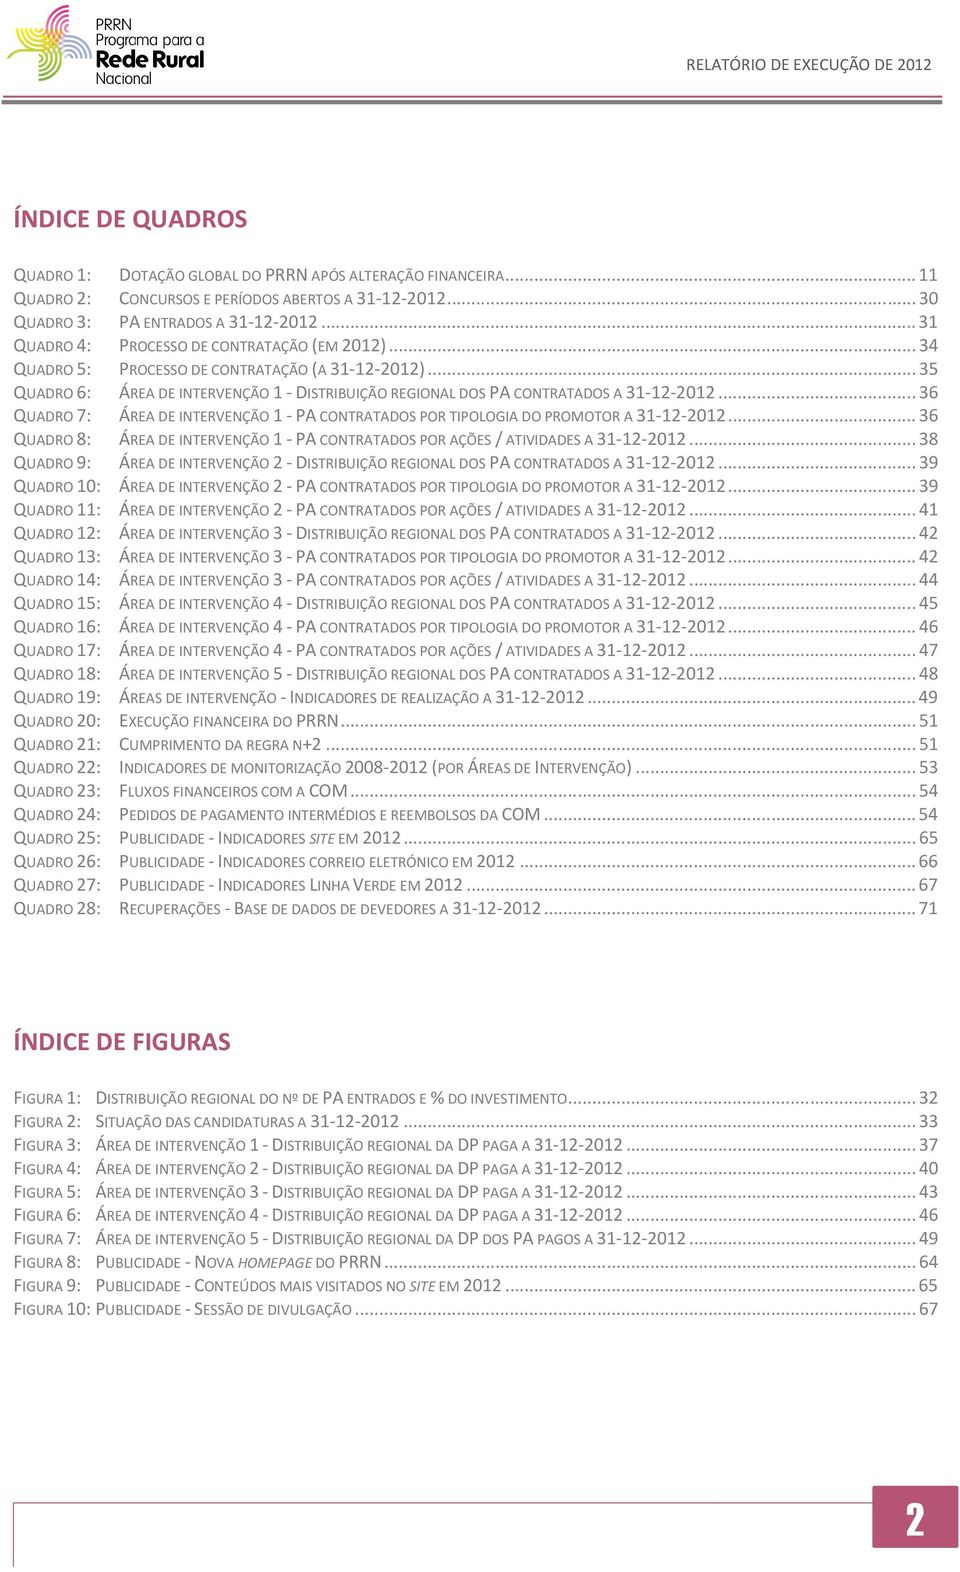 .. 36 QUADRO 7: ÁREA DE INTERVENÇÃO 1 - PA CONTRATADOS POR TIPOLOGIA DO PROMOTOR A 31-12-2012... 36 QUADRO 8: ÁREA DE INTERVENÇÃO 1 - PA CONTRATADOS POR AÇÕES / ATIVIDADES A 31-12-2012.